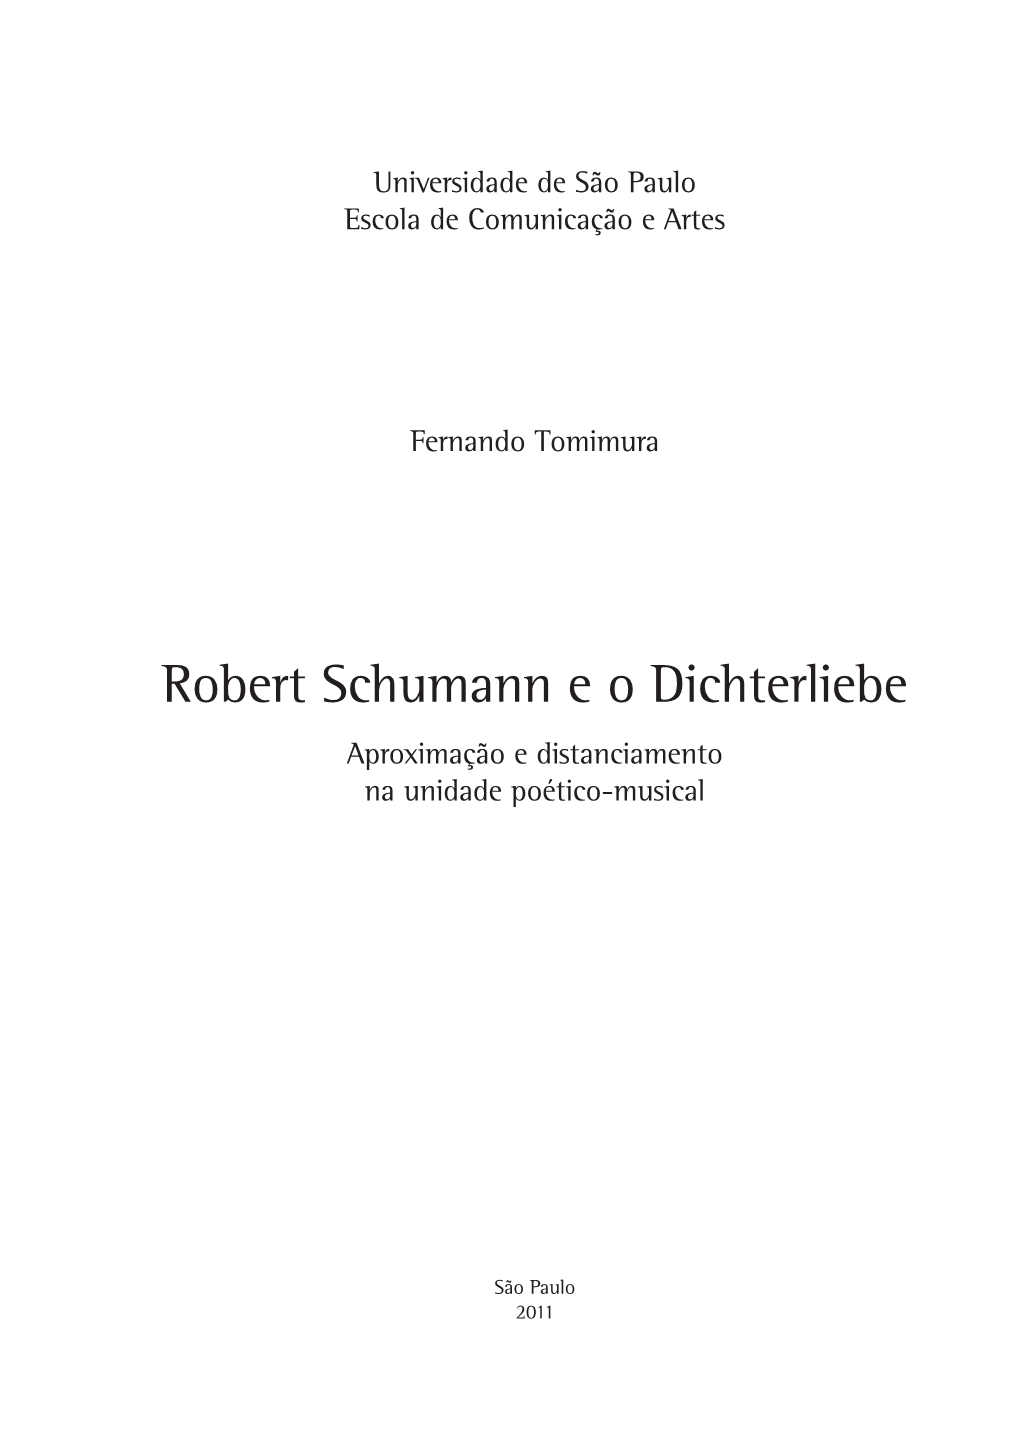 Robert Schumann E O Dichterliebe Aproximação E Distanciamento Na Unidade Poético-Musical